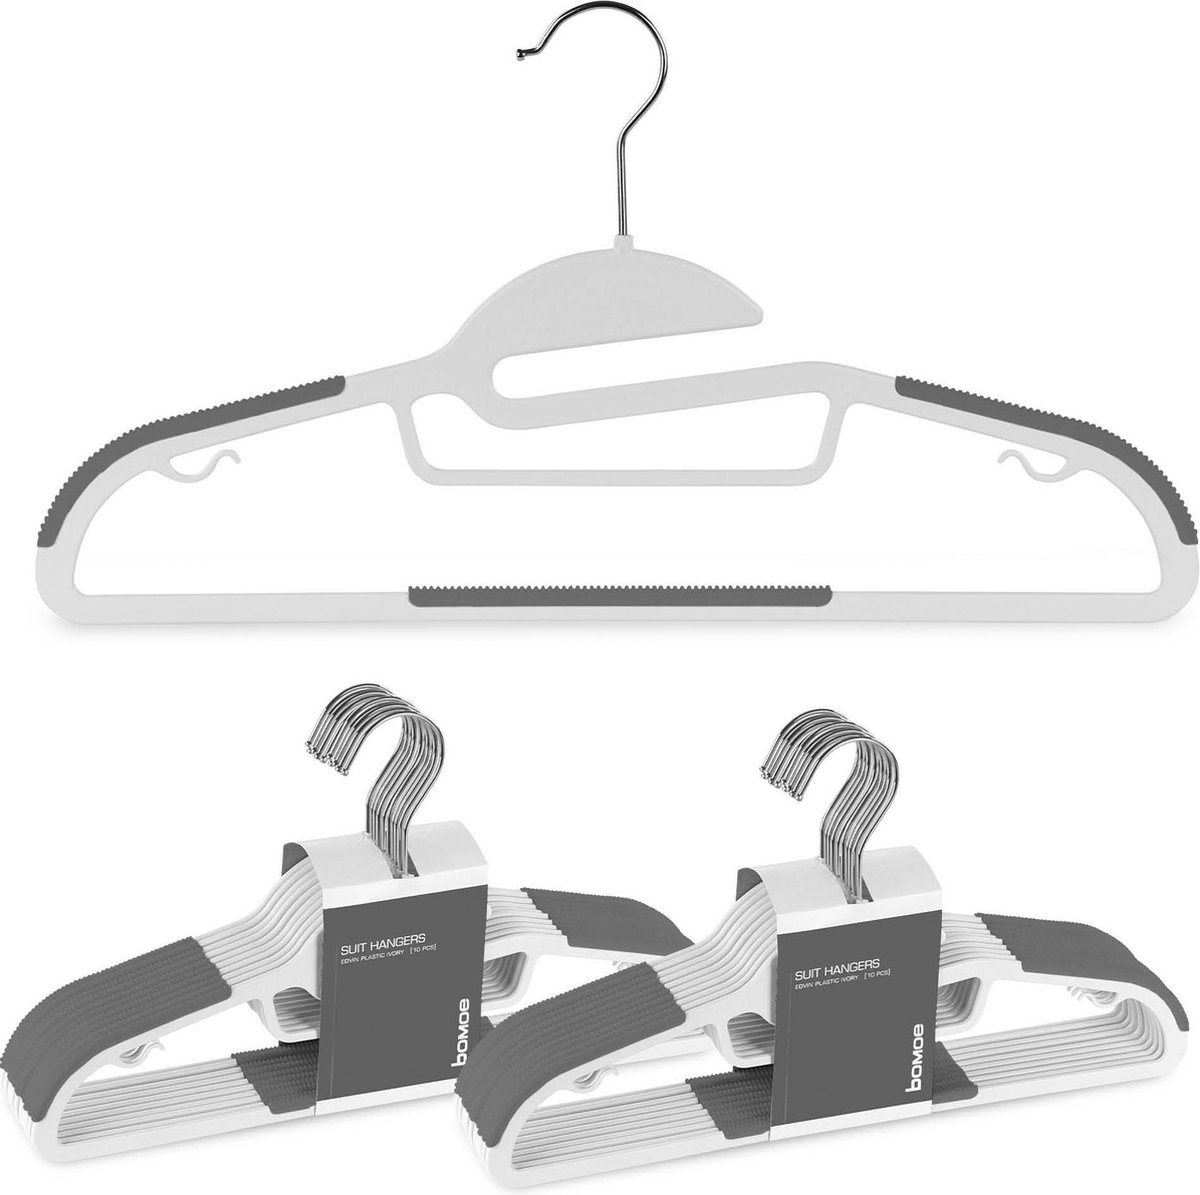 bomoe Kledinghanger set Edvin Wit/Grijs - 20 Universele Kleerhangers - Ruimtebesparende Metalen Hangers voor Pakken, Broeken en veel meer - Anti-slip Rubber Coating Jassenhangers